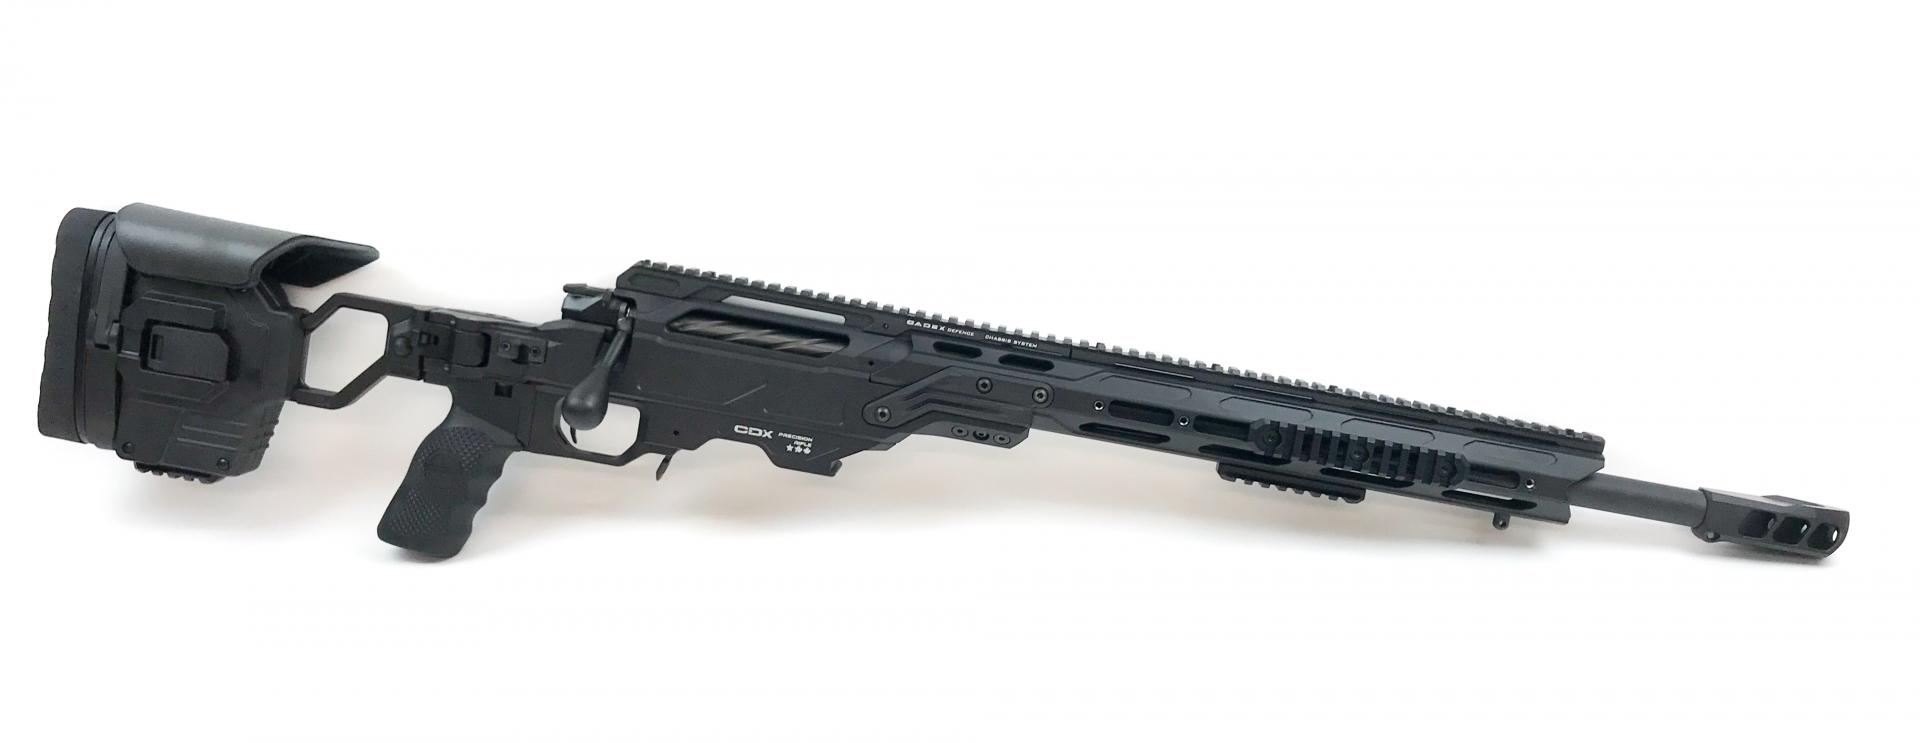 CADEX DEFENSE CDX-30 Lite rifle 308 WIN CDX30-LITE-308-20-BLK